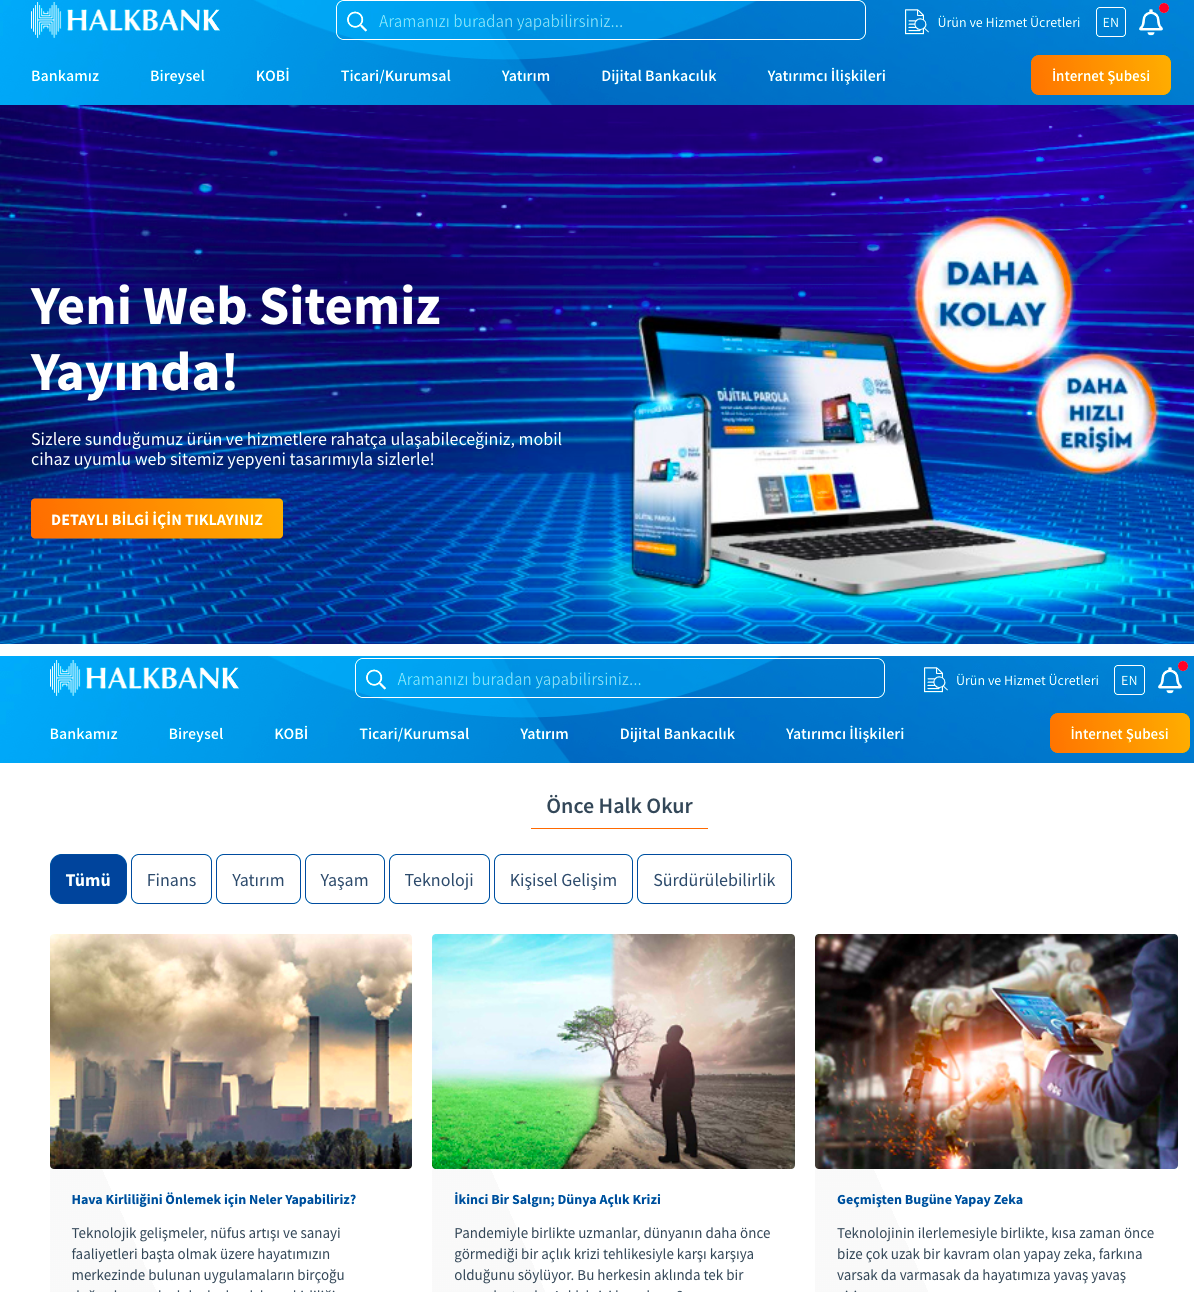 Halkbank Web Sayfaları yenilendi